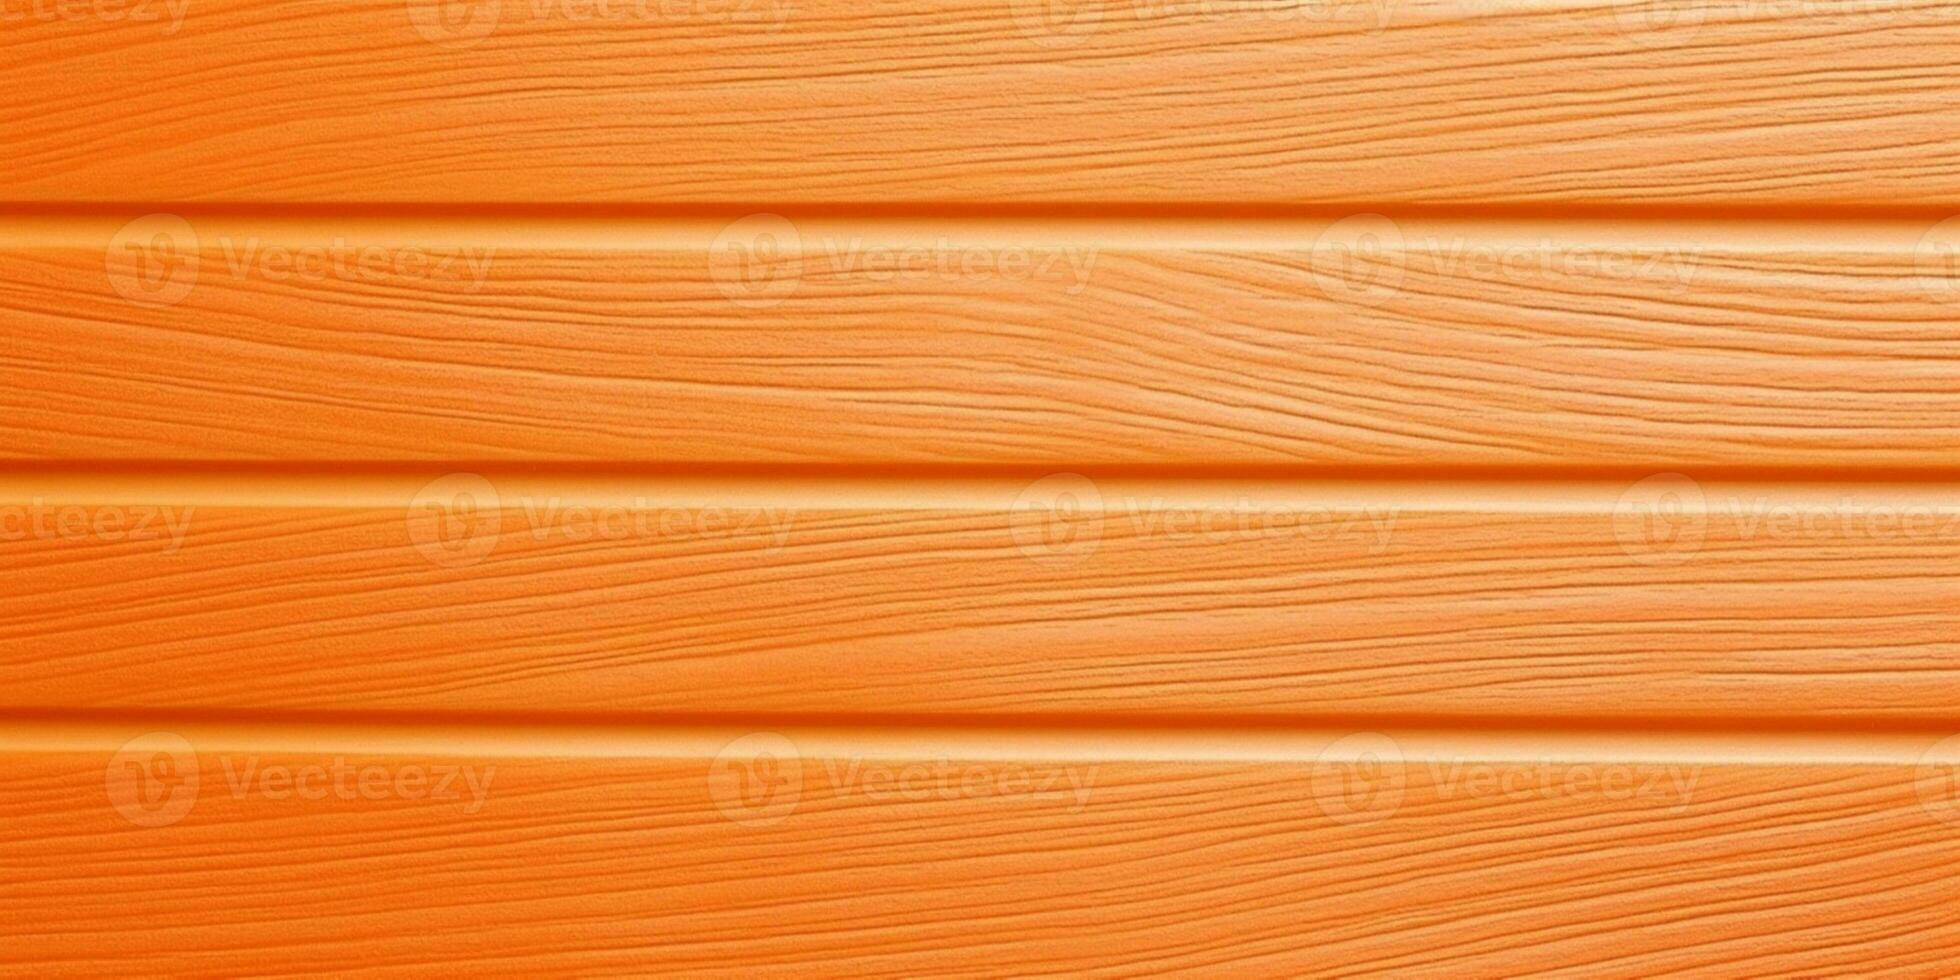 Wooden orange texture shiny background. AI Generated photo